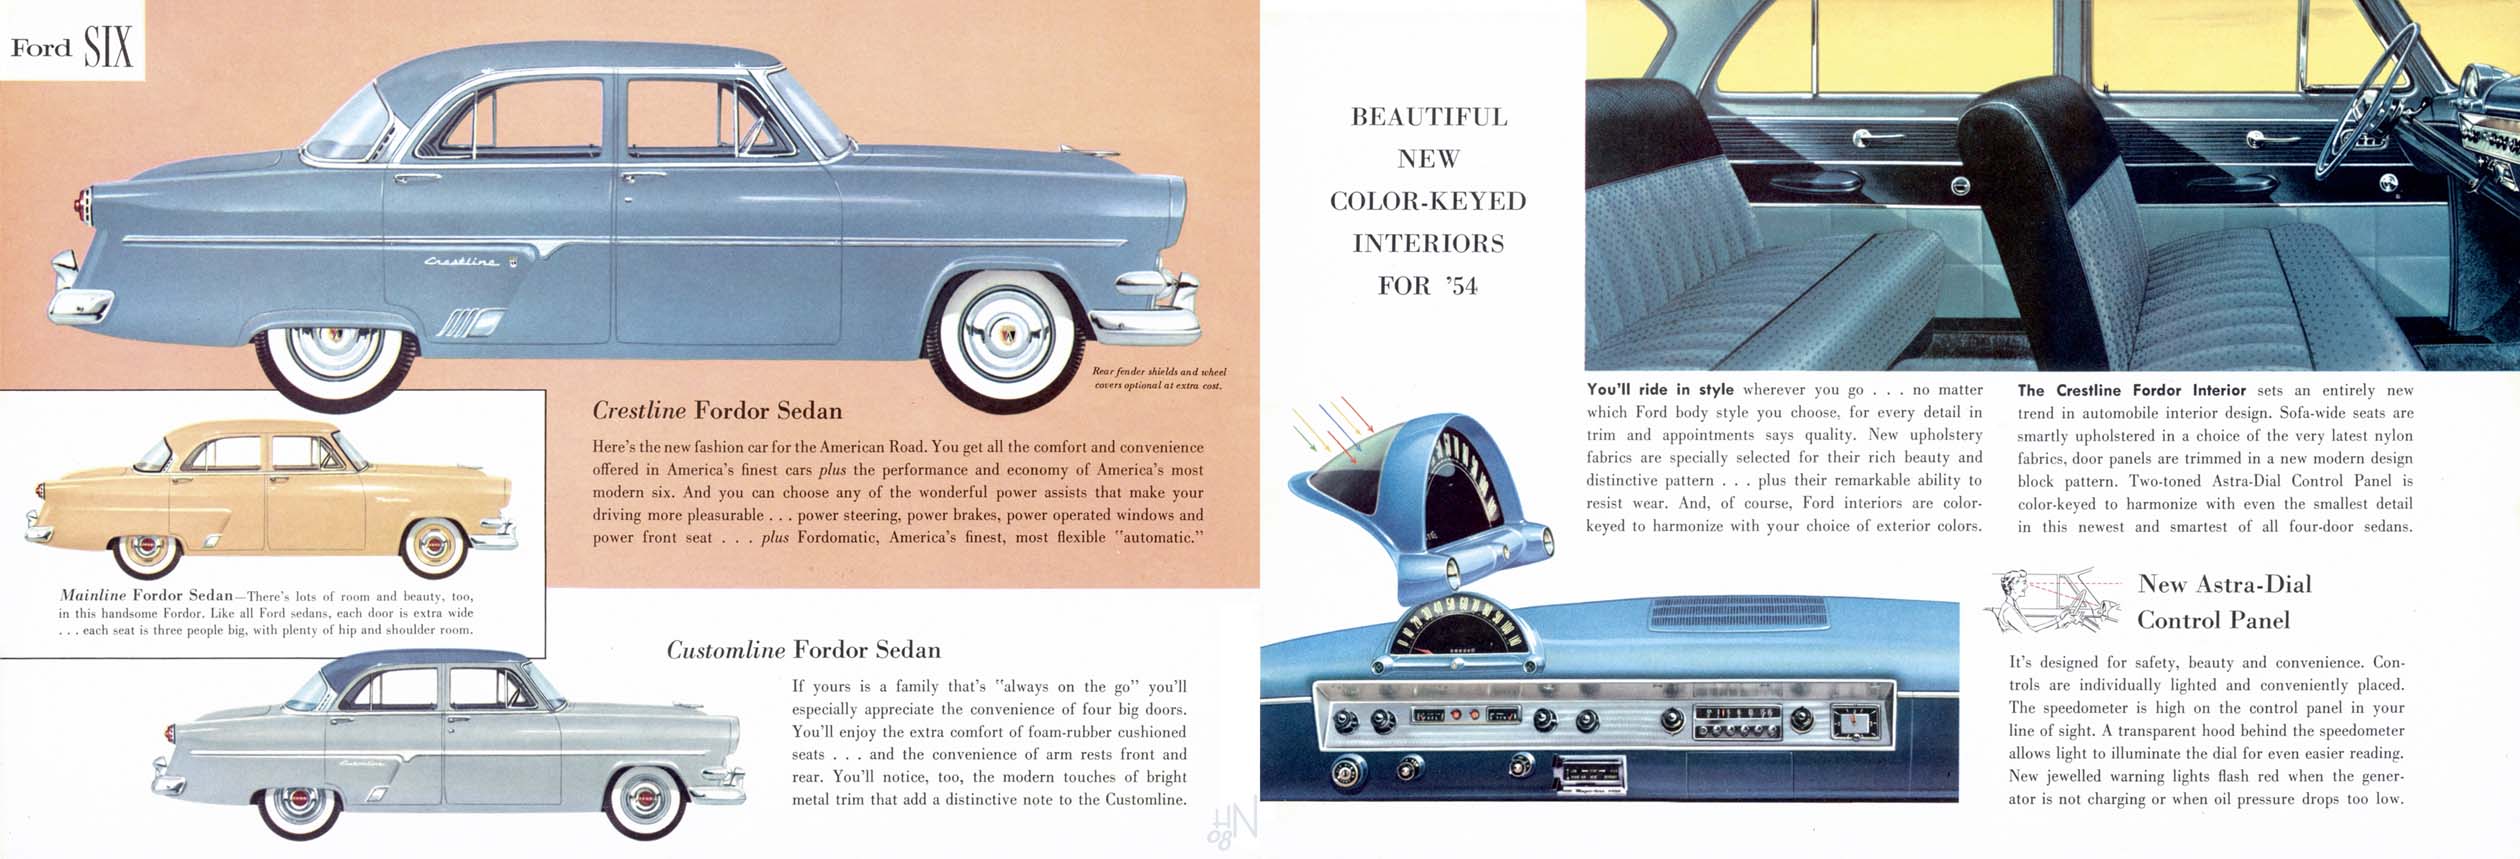 1954 Ford Six-08-09